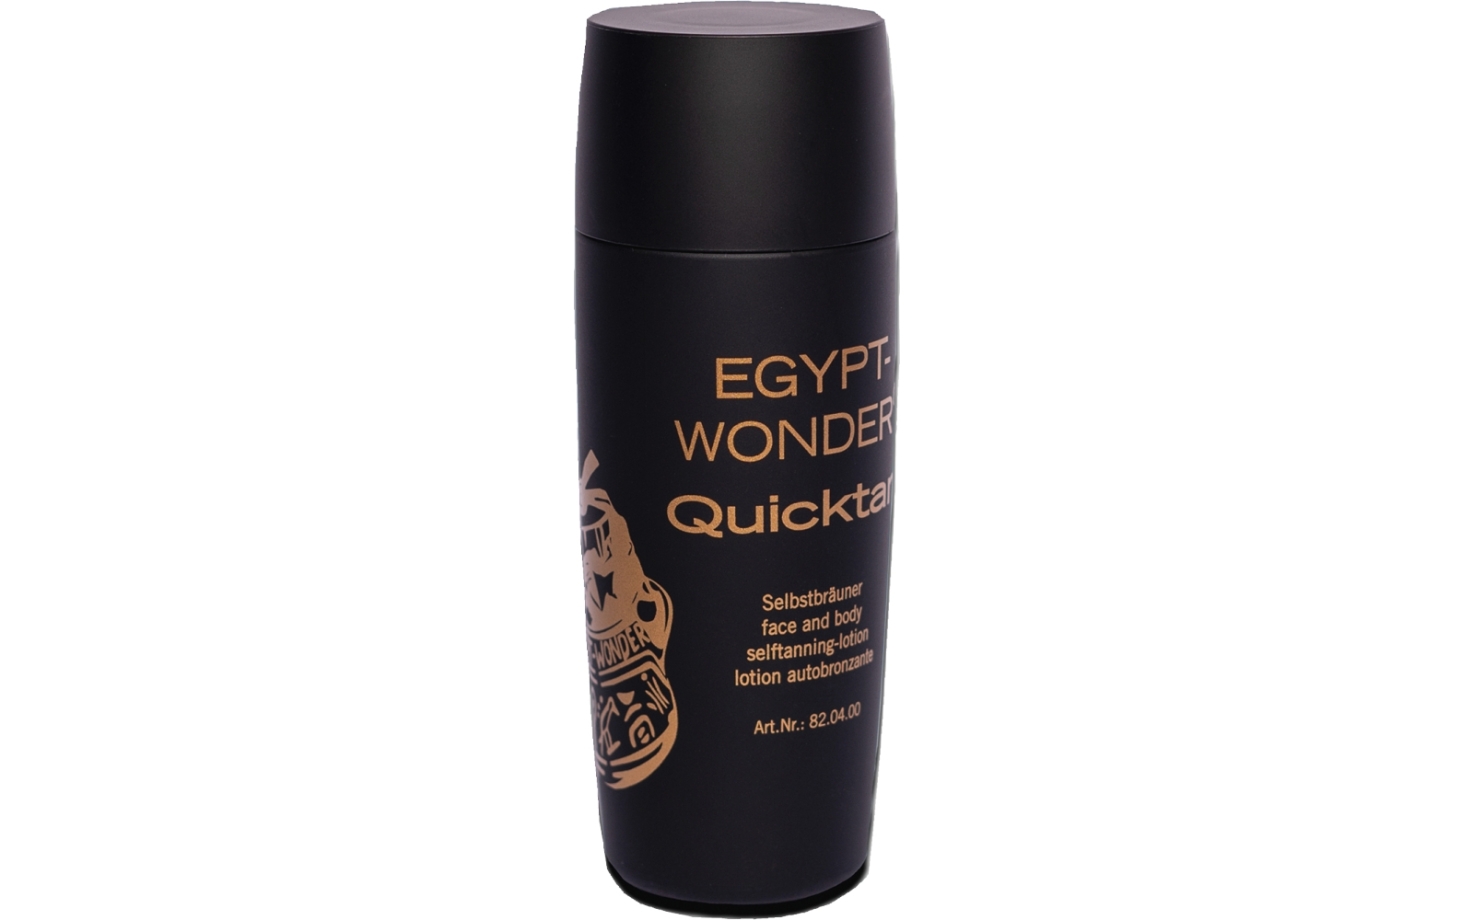 Egypt Wonder Quicktan 100 ml